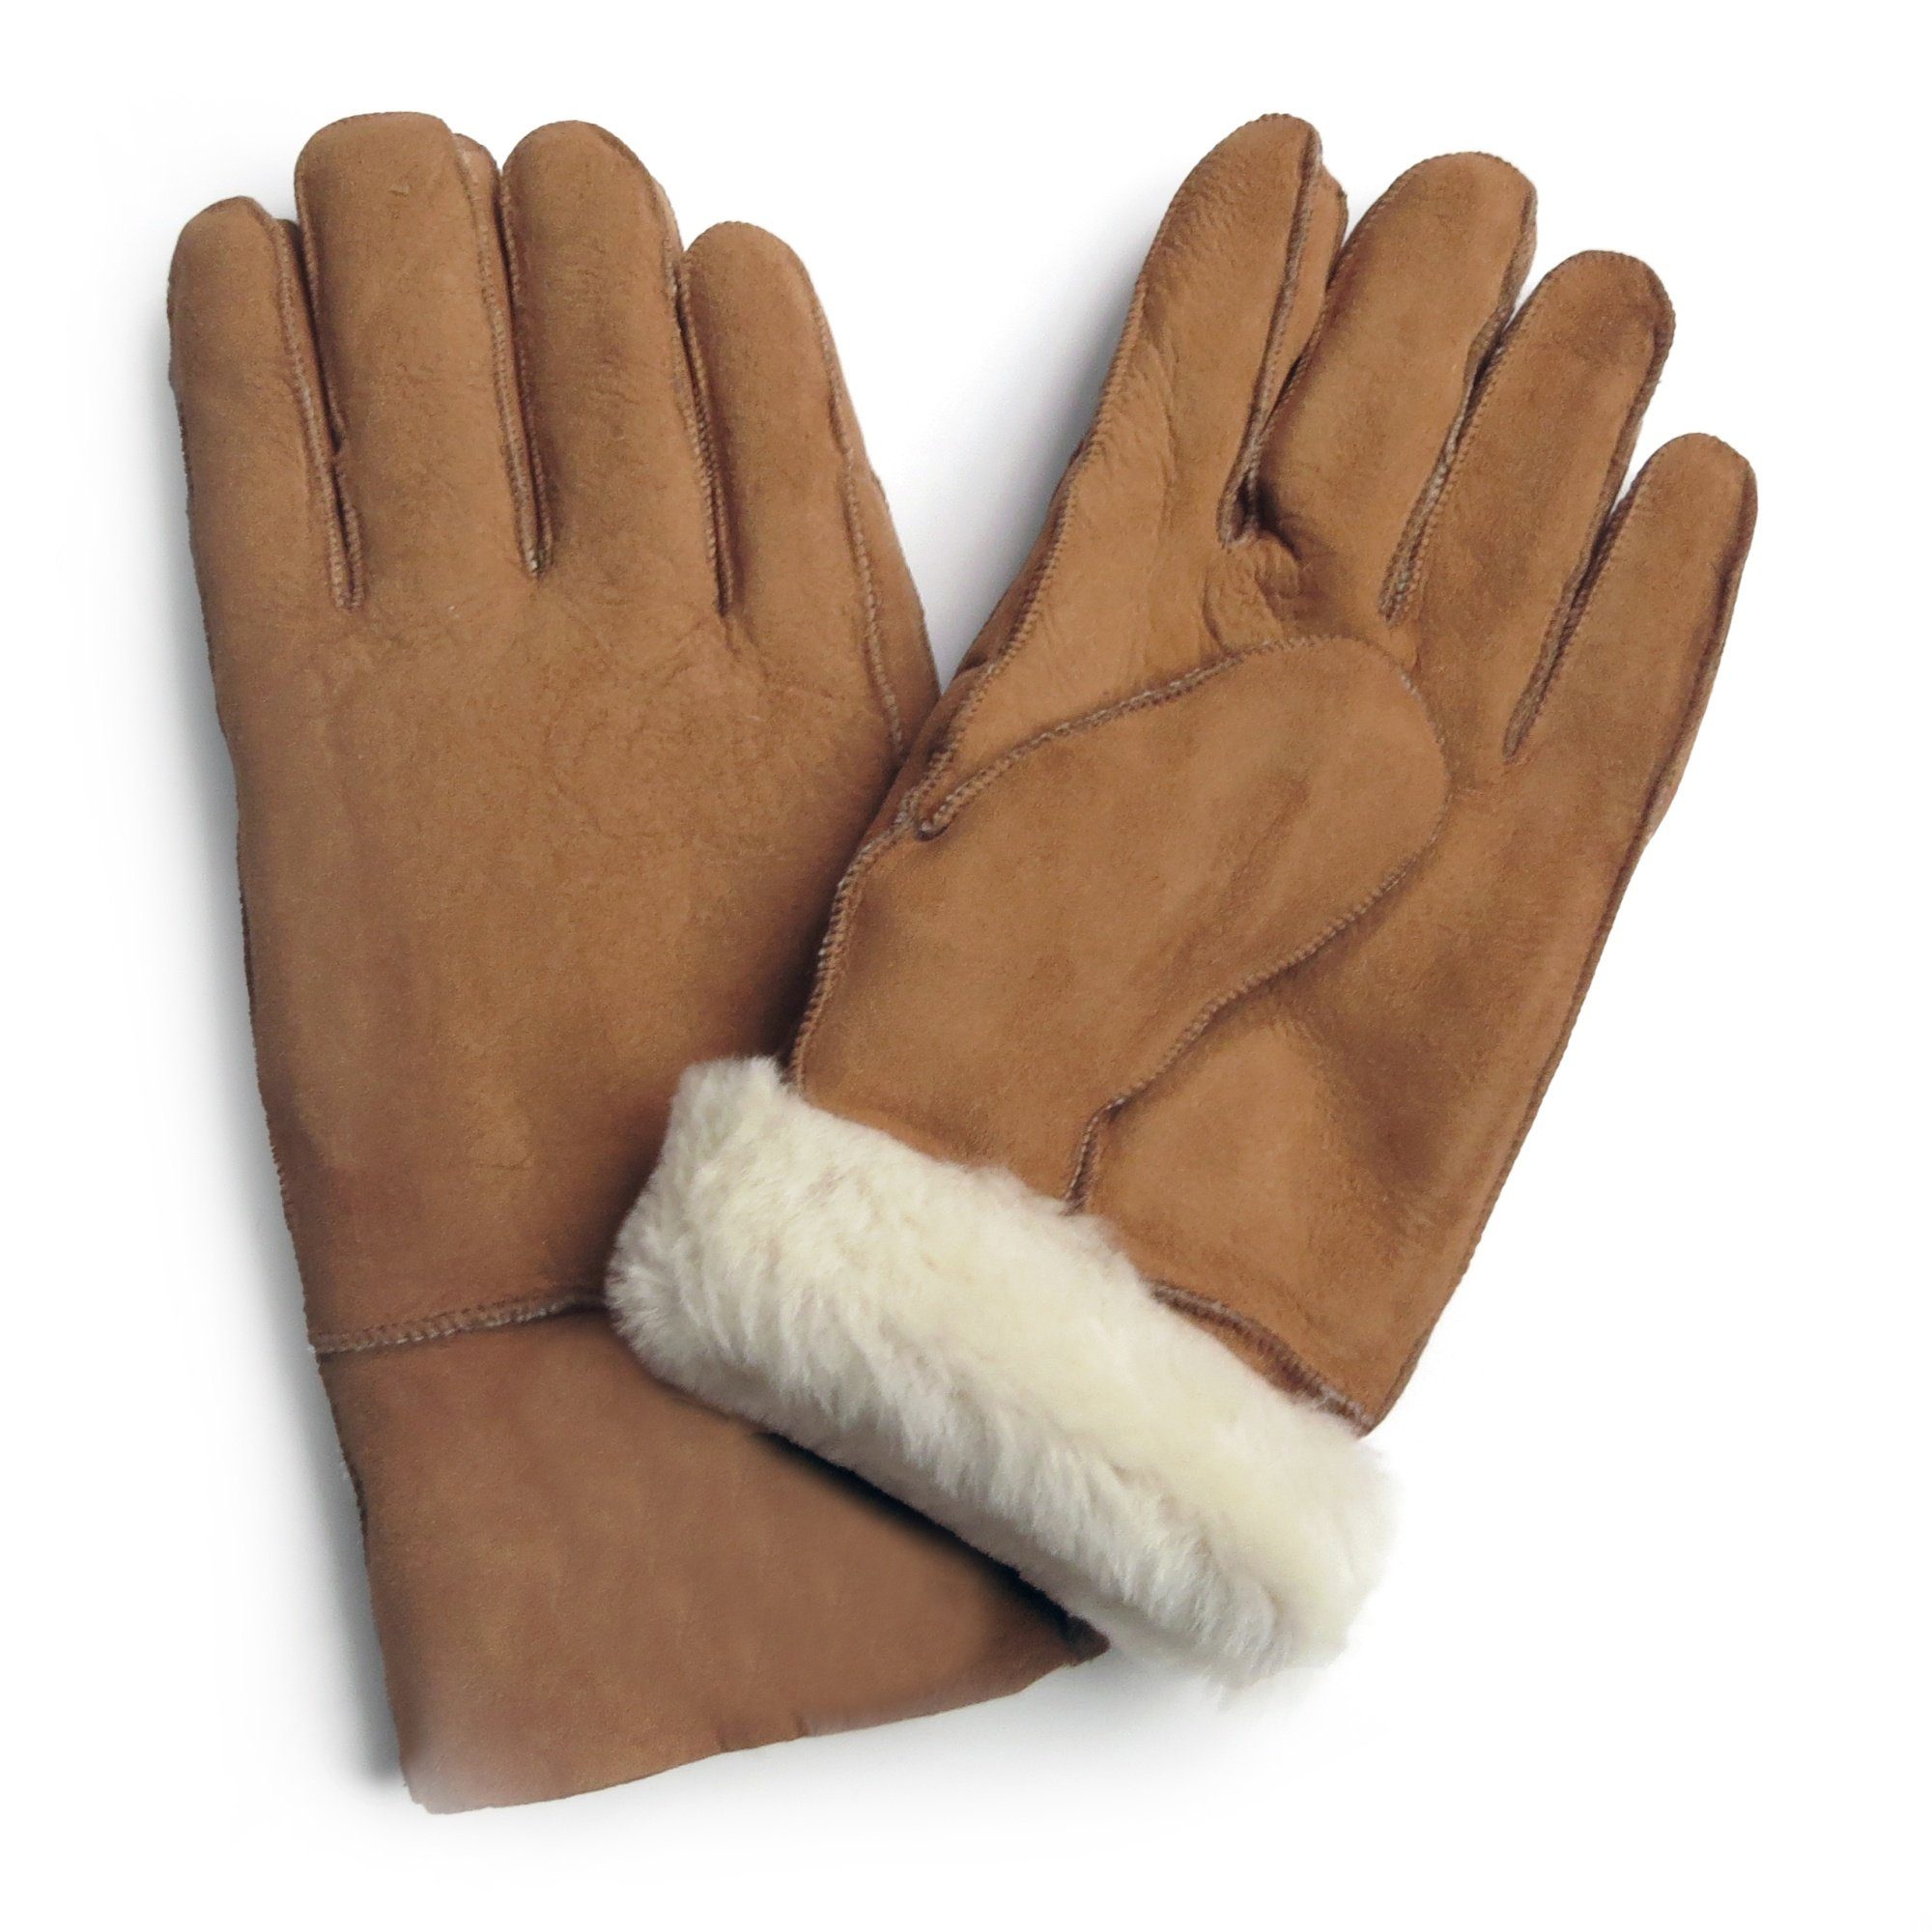 Fells unisex Sonia abweichen, Schaffell Farben braun kann aus Struktur Handschuhe abweichen hochwertig Winter-Arbeitshandschuhe des warm Originelli Lammfell können